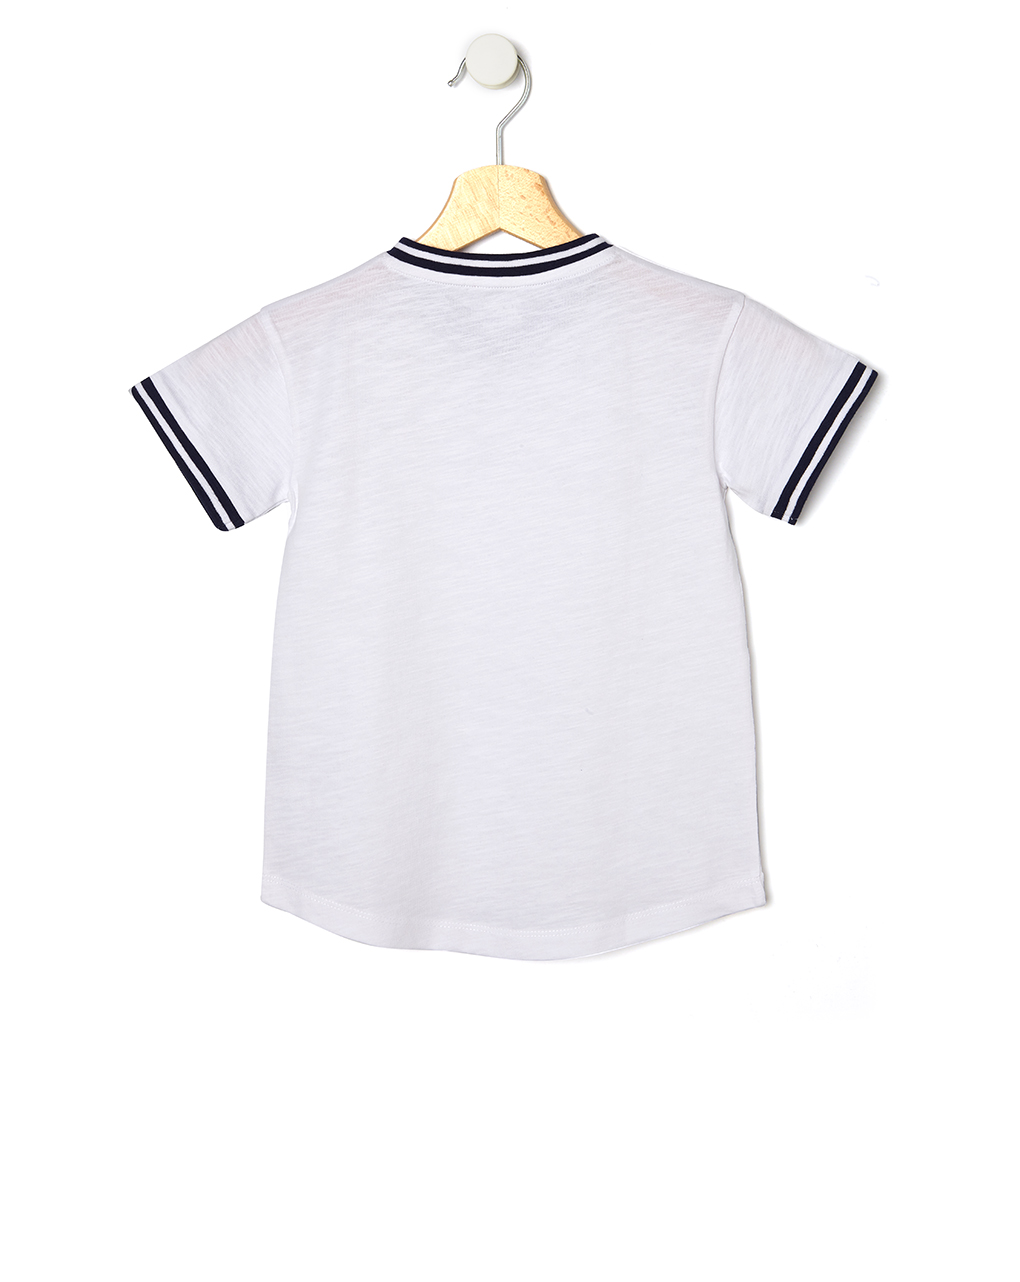 T-shirt basic λευκό μεγ.8-9/9-10 ετών για αγόρι - Prénatal